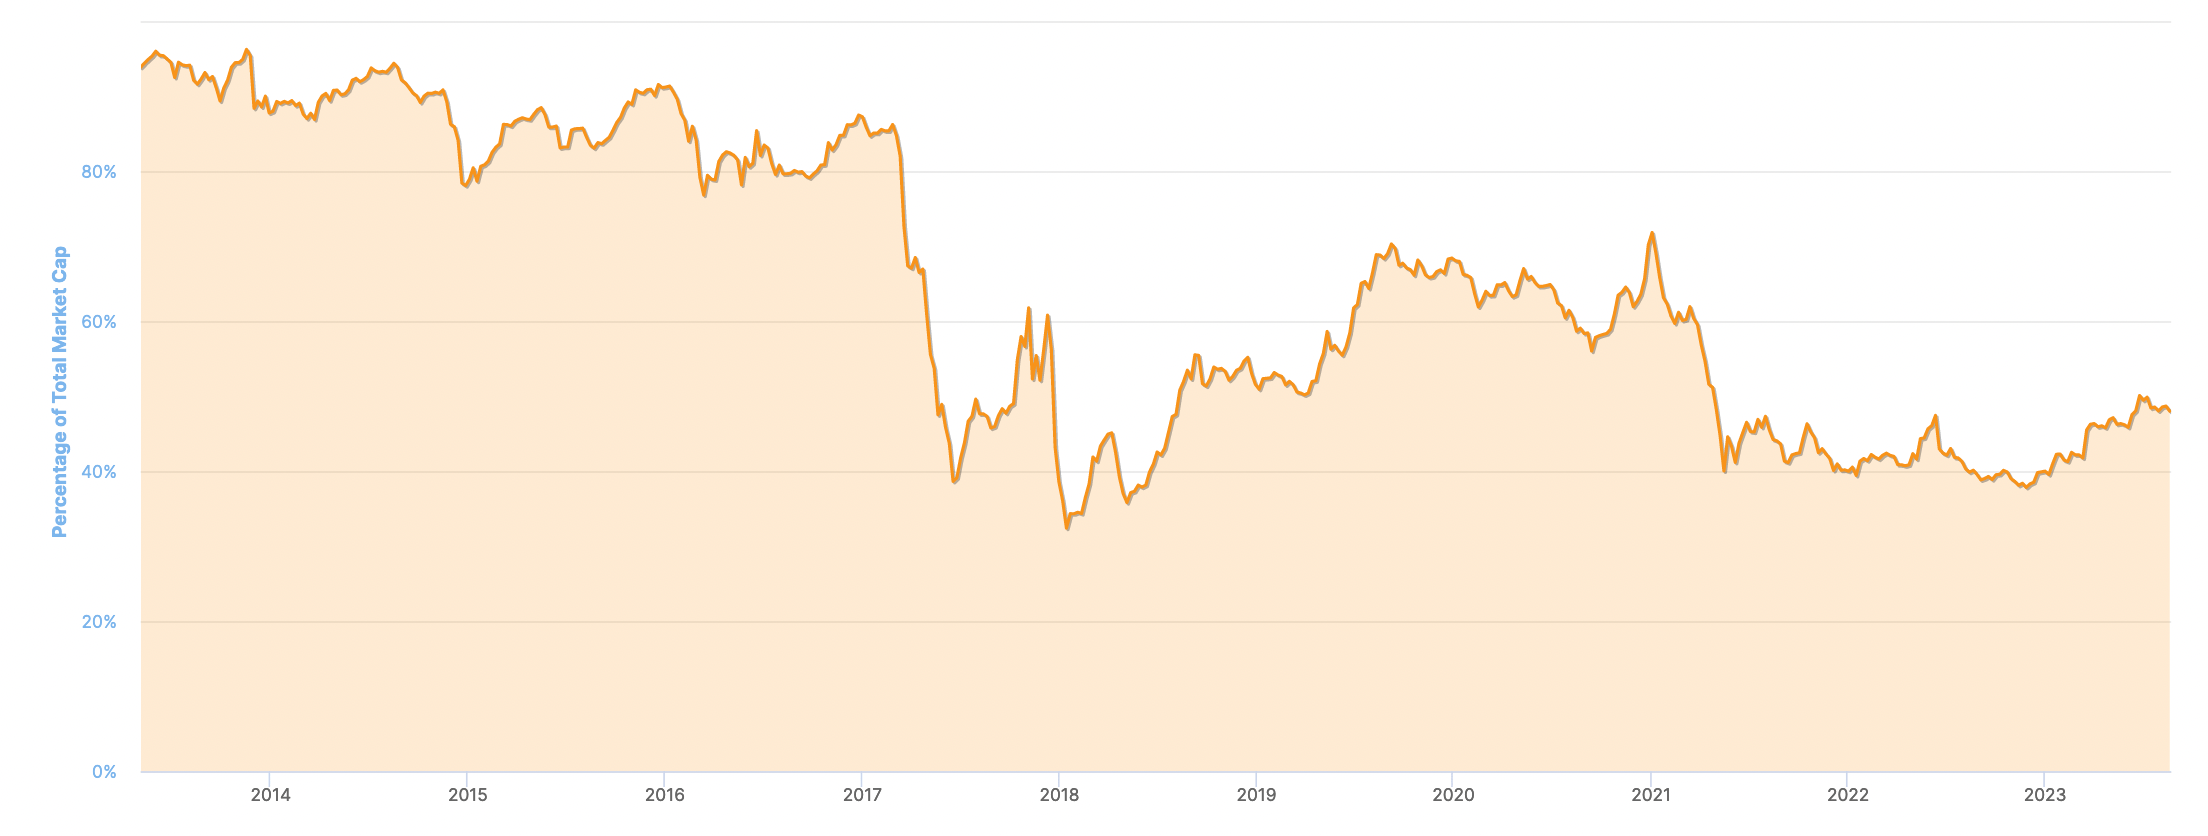 Coin market cap bitcoin dominance